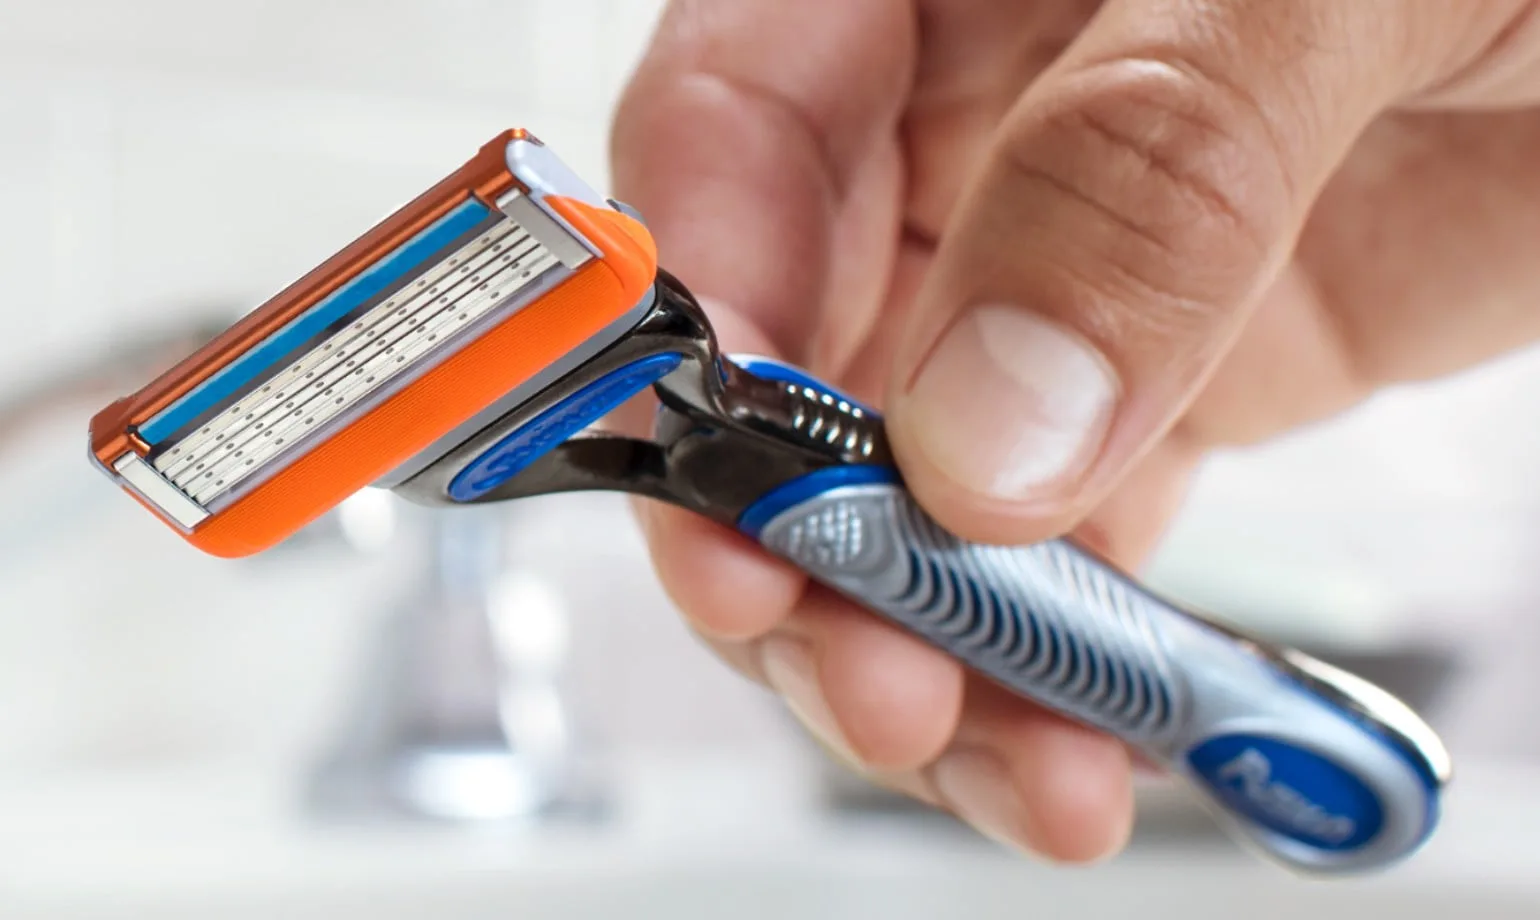 Use o aparelho de barbear Gillette SkinGuard Sensitive com tecnologia flexball para reduzir o risco de cortes